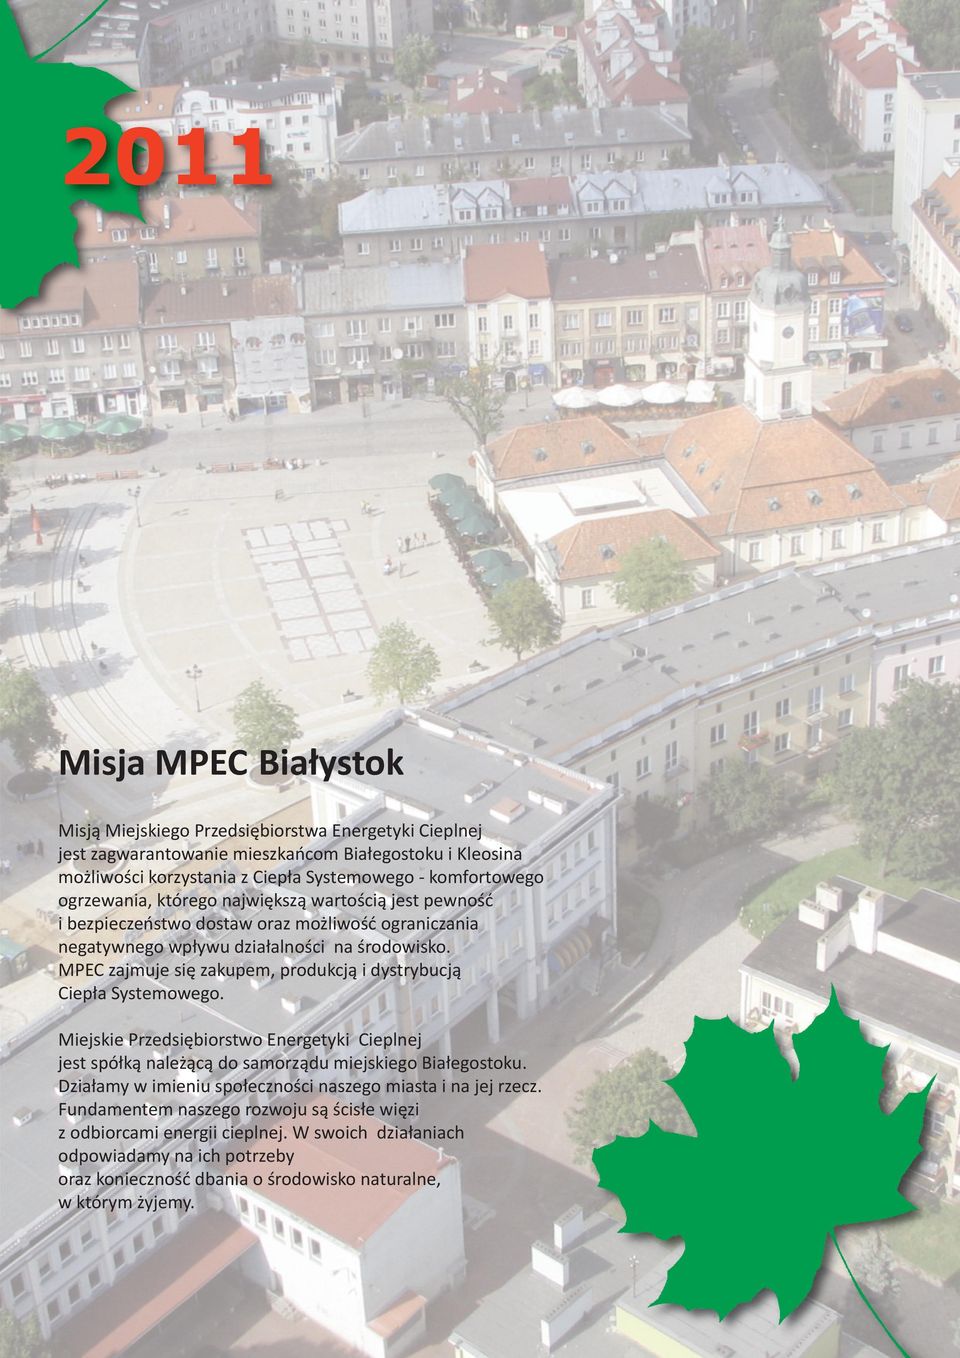 MPEC zajmuje się zakupem, produkcją i dystrybucją Ciepła Systemowego. Miejskie Przedsiębiorstwo Energetyki Cieplnej jest spółką należącą do samorządu miejskiego Białegostoku.